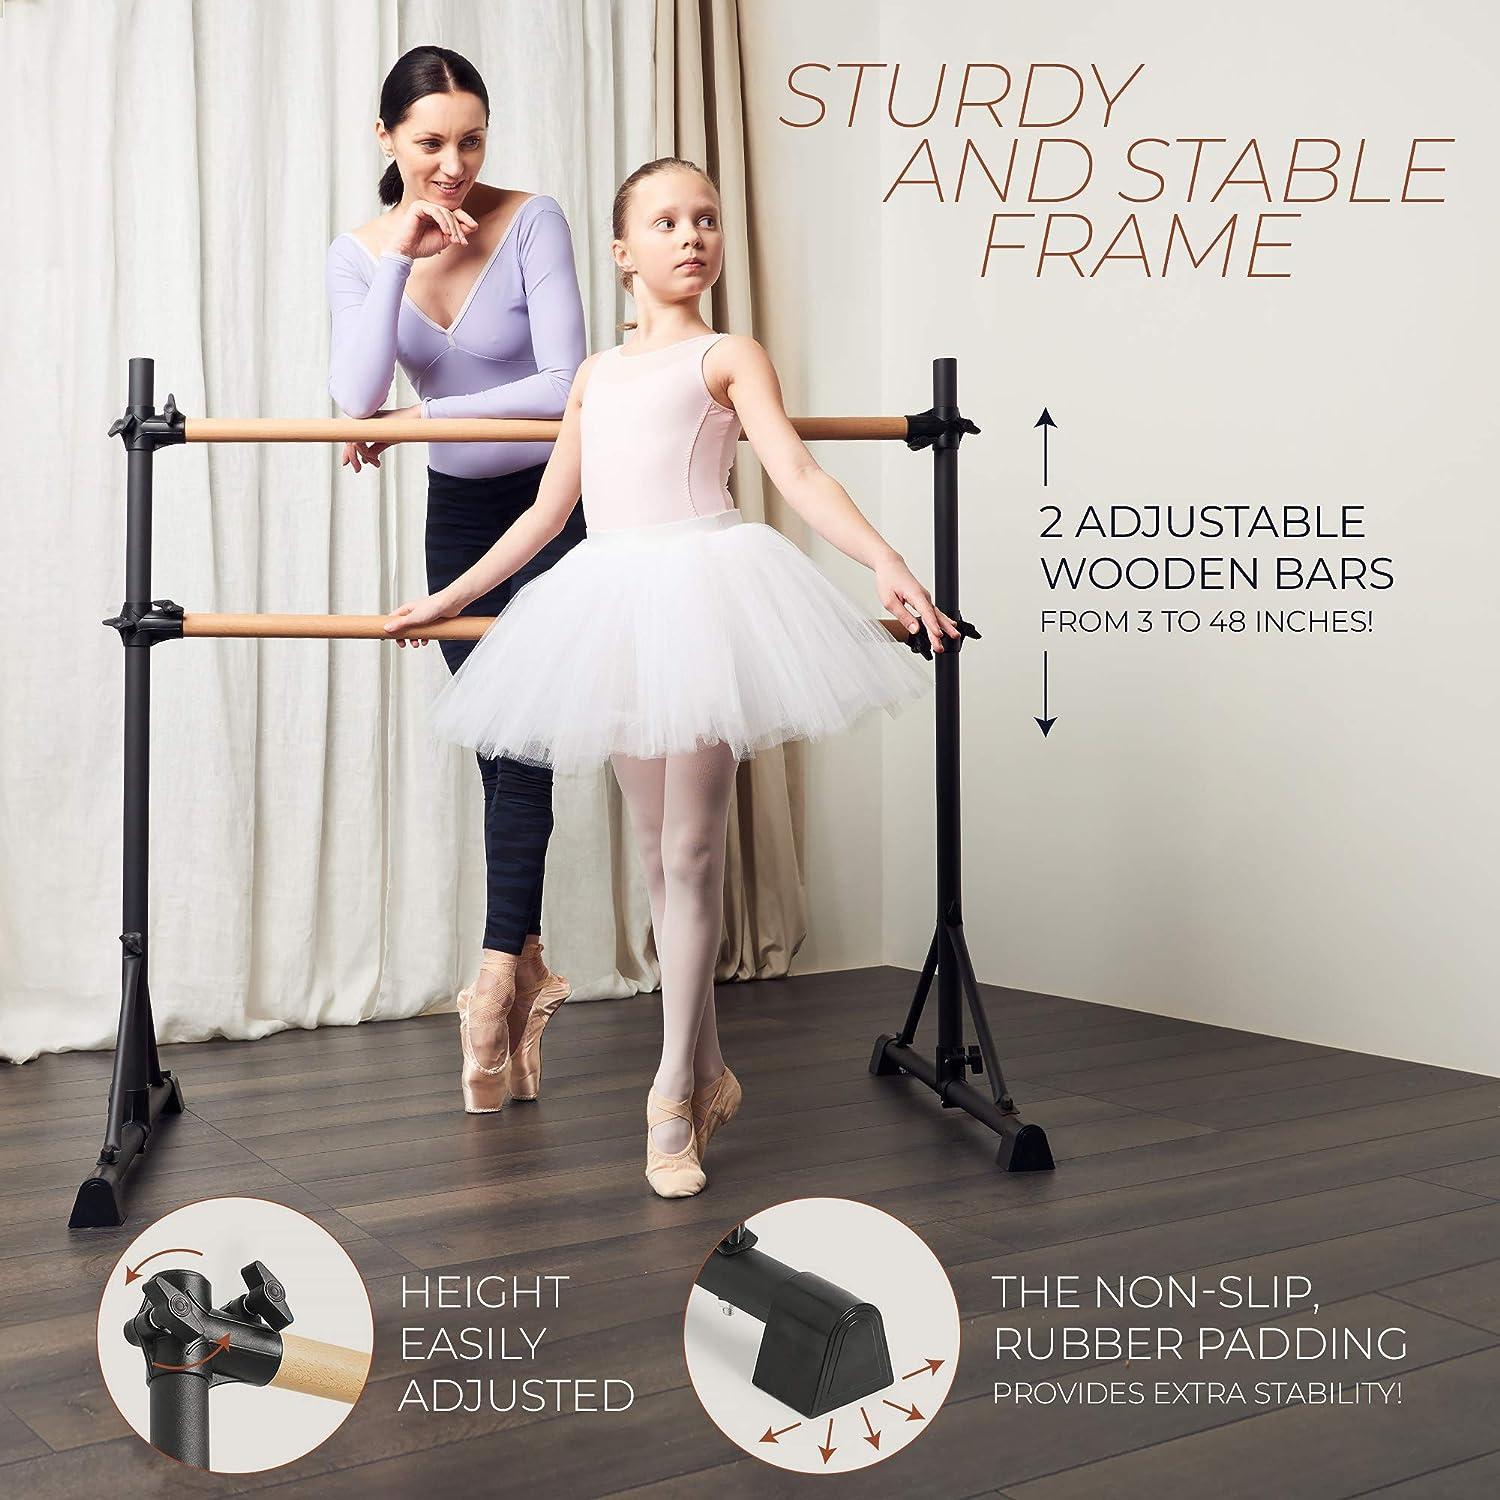 Victorem Portable Ballet Barre for Home - 4 FT. Ballet Bar for